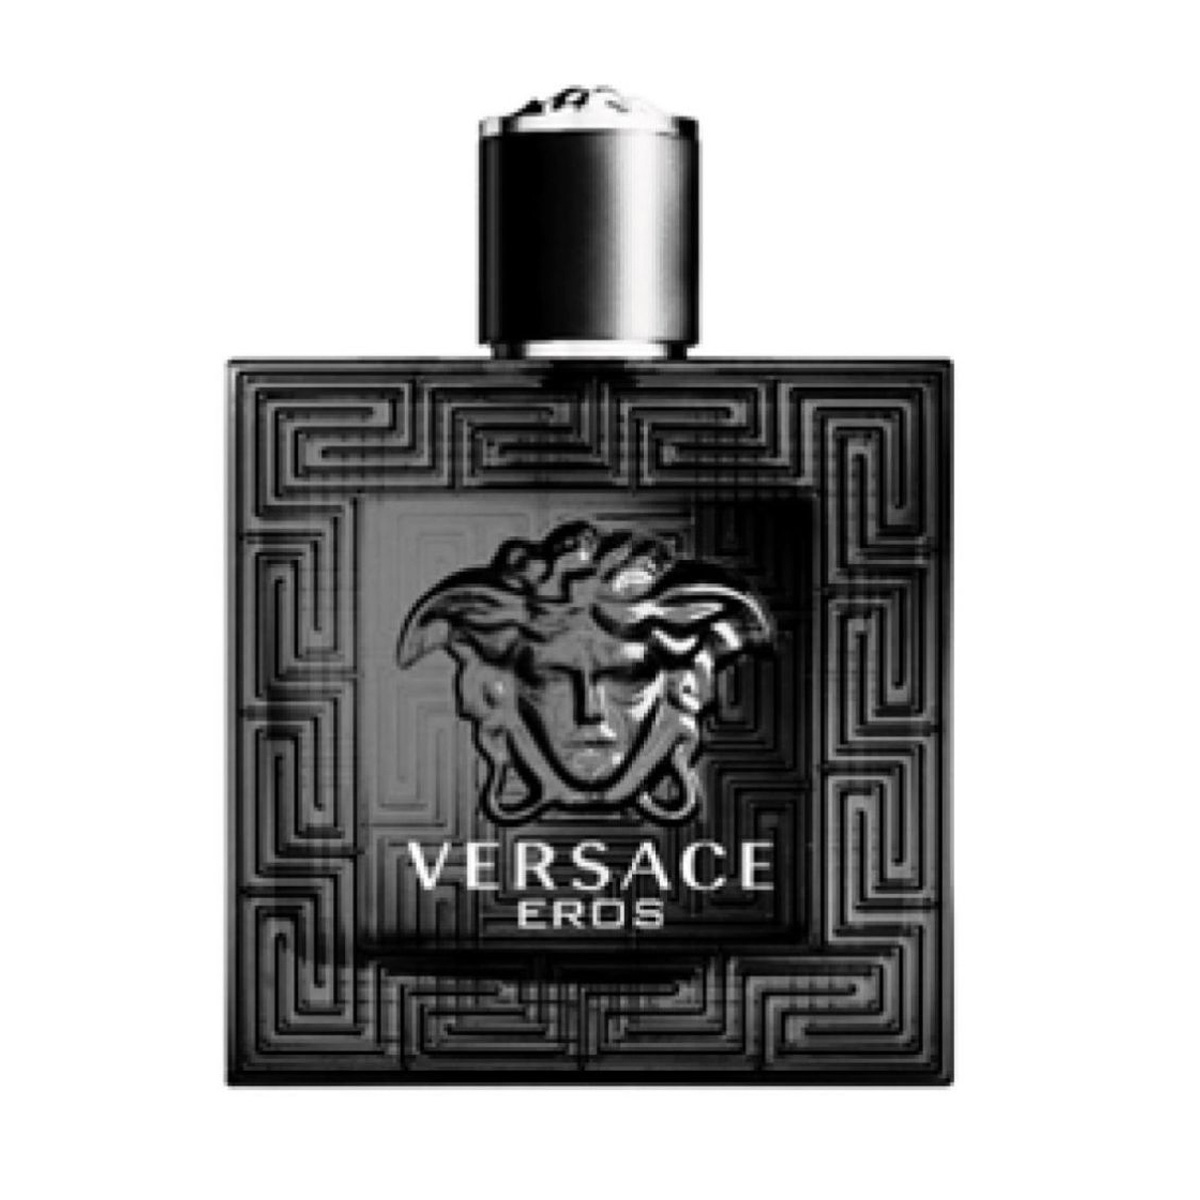 versace eros black friday, OFF 74%,Buy!